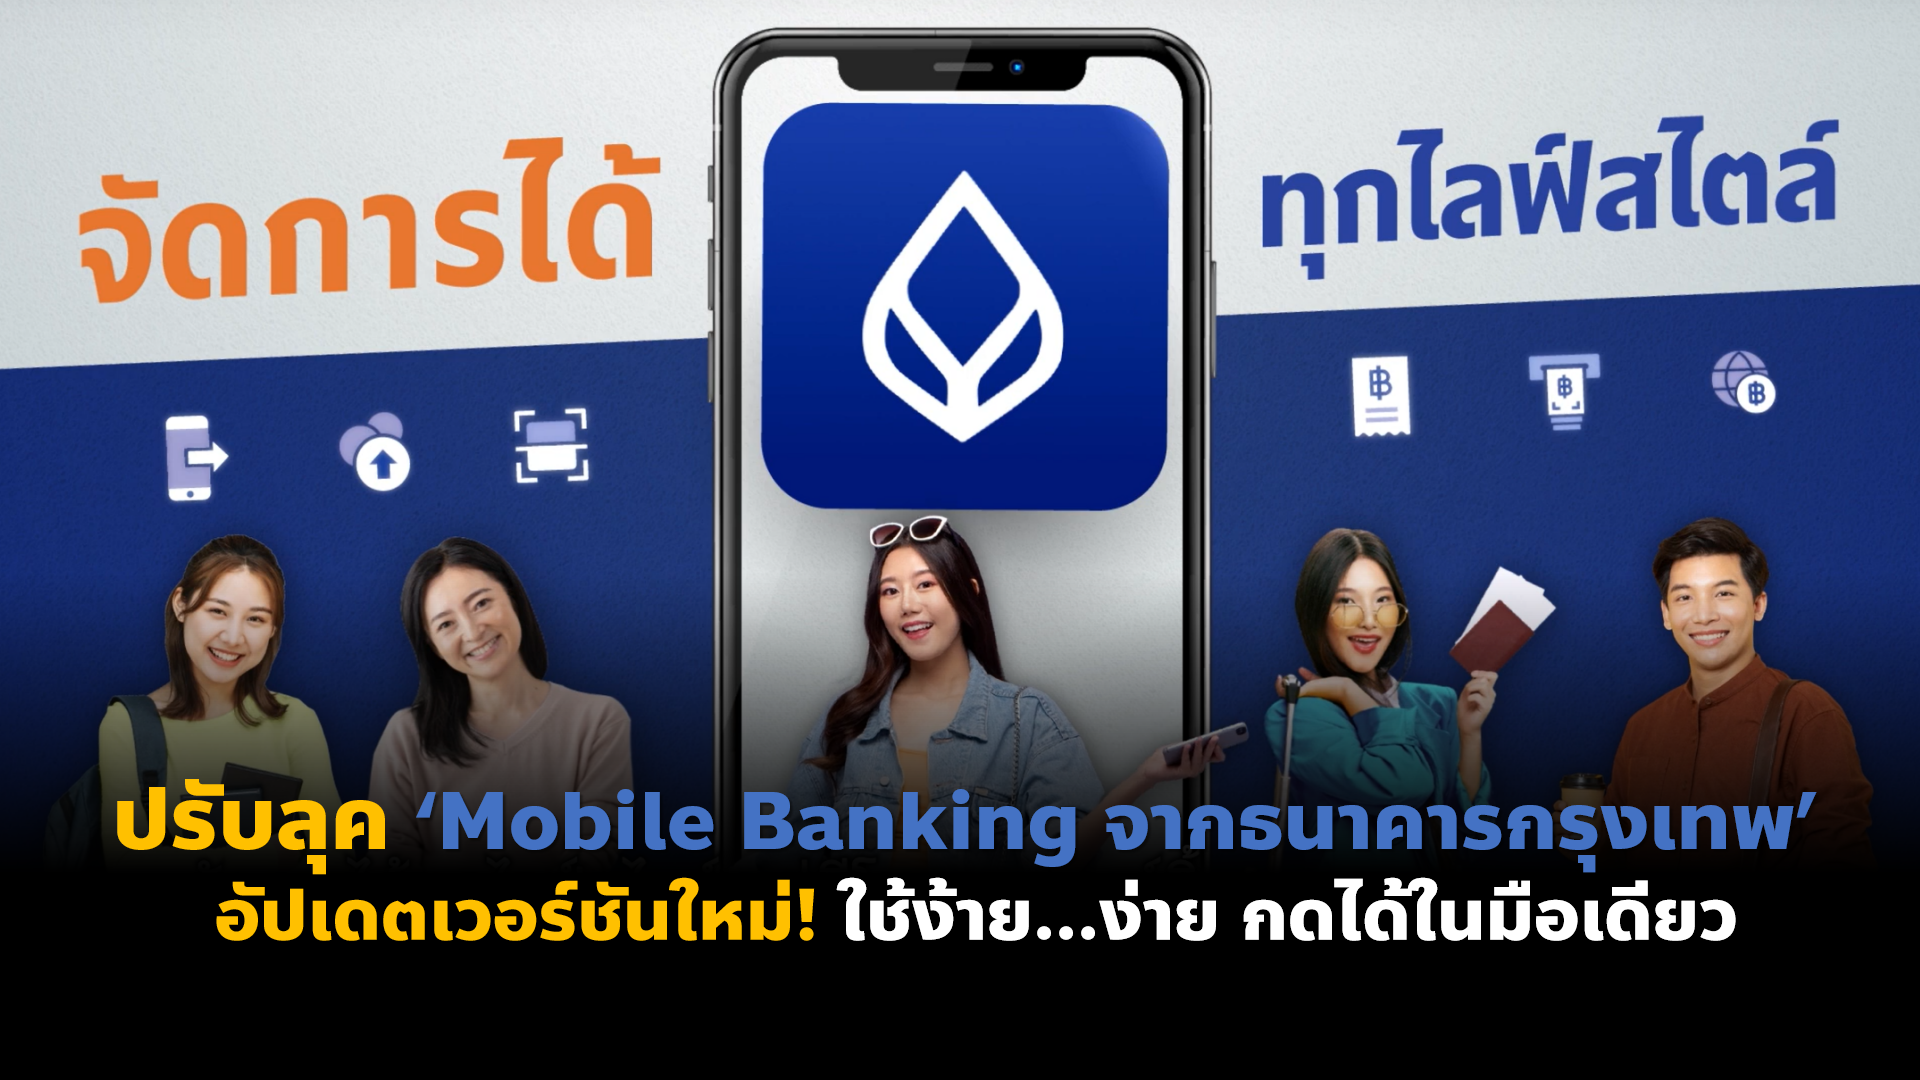 ปรับลุค ‘Mobile Banking จาก ธนาคารกรุงเทพ’ อัปเดตเวอร์ชันใหม่! ใช้ง้าย…ง่าย กดได้ในมือเดียว